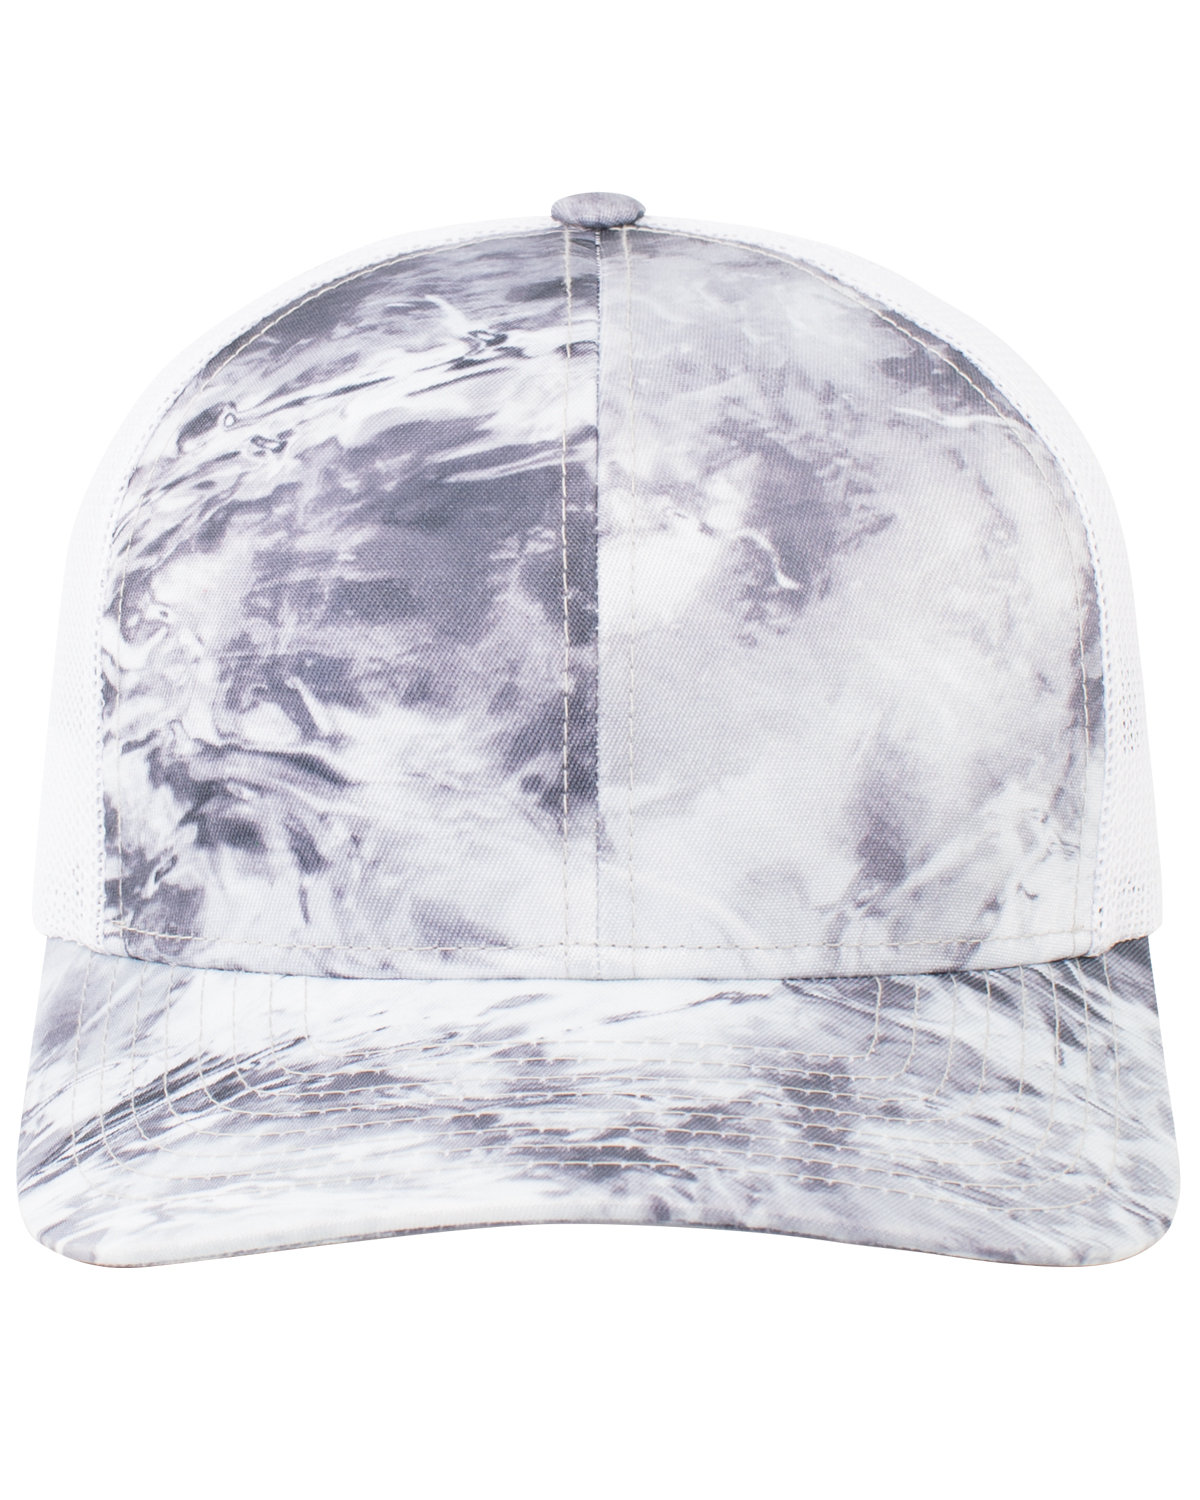 Pacific Headwear Snapback Trucker Hat HAILSTONE/ WHITE 